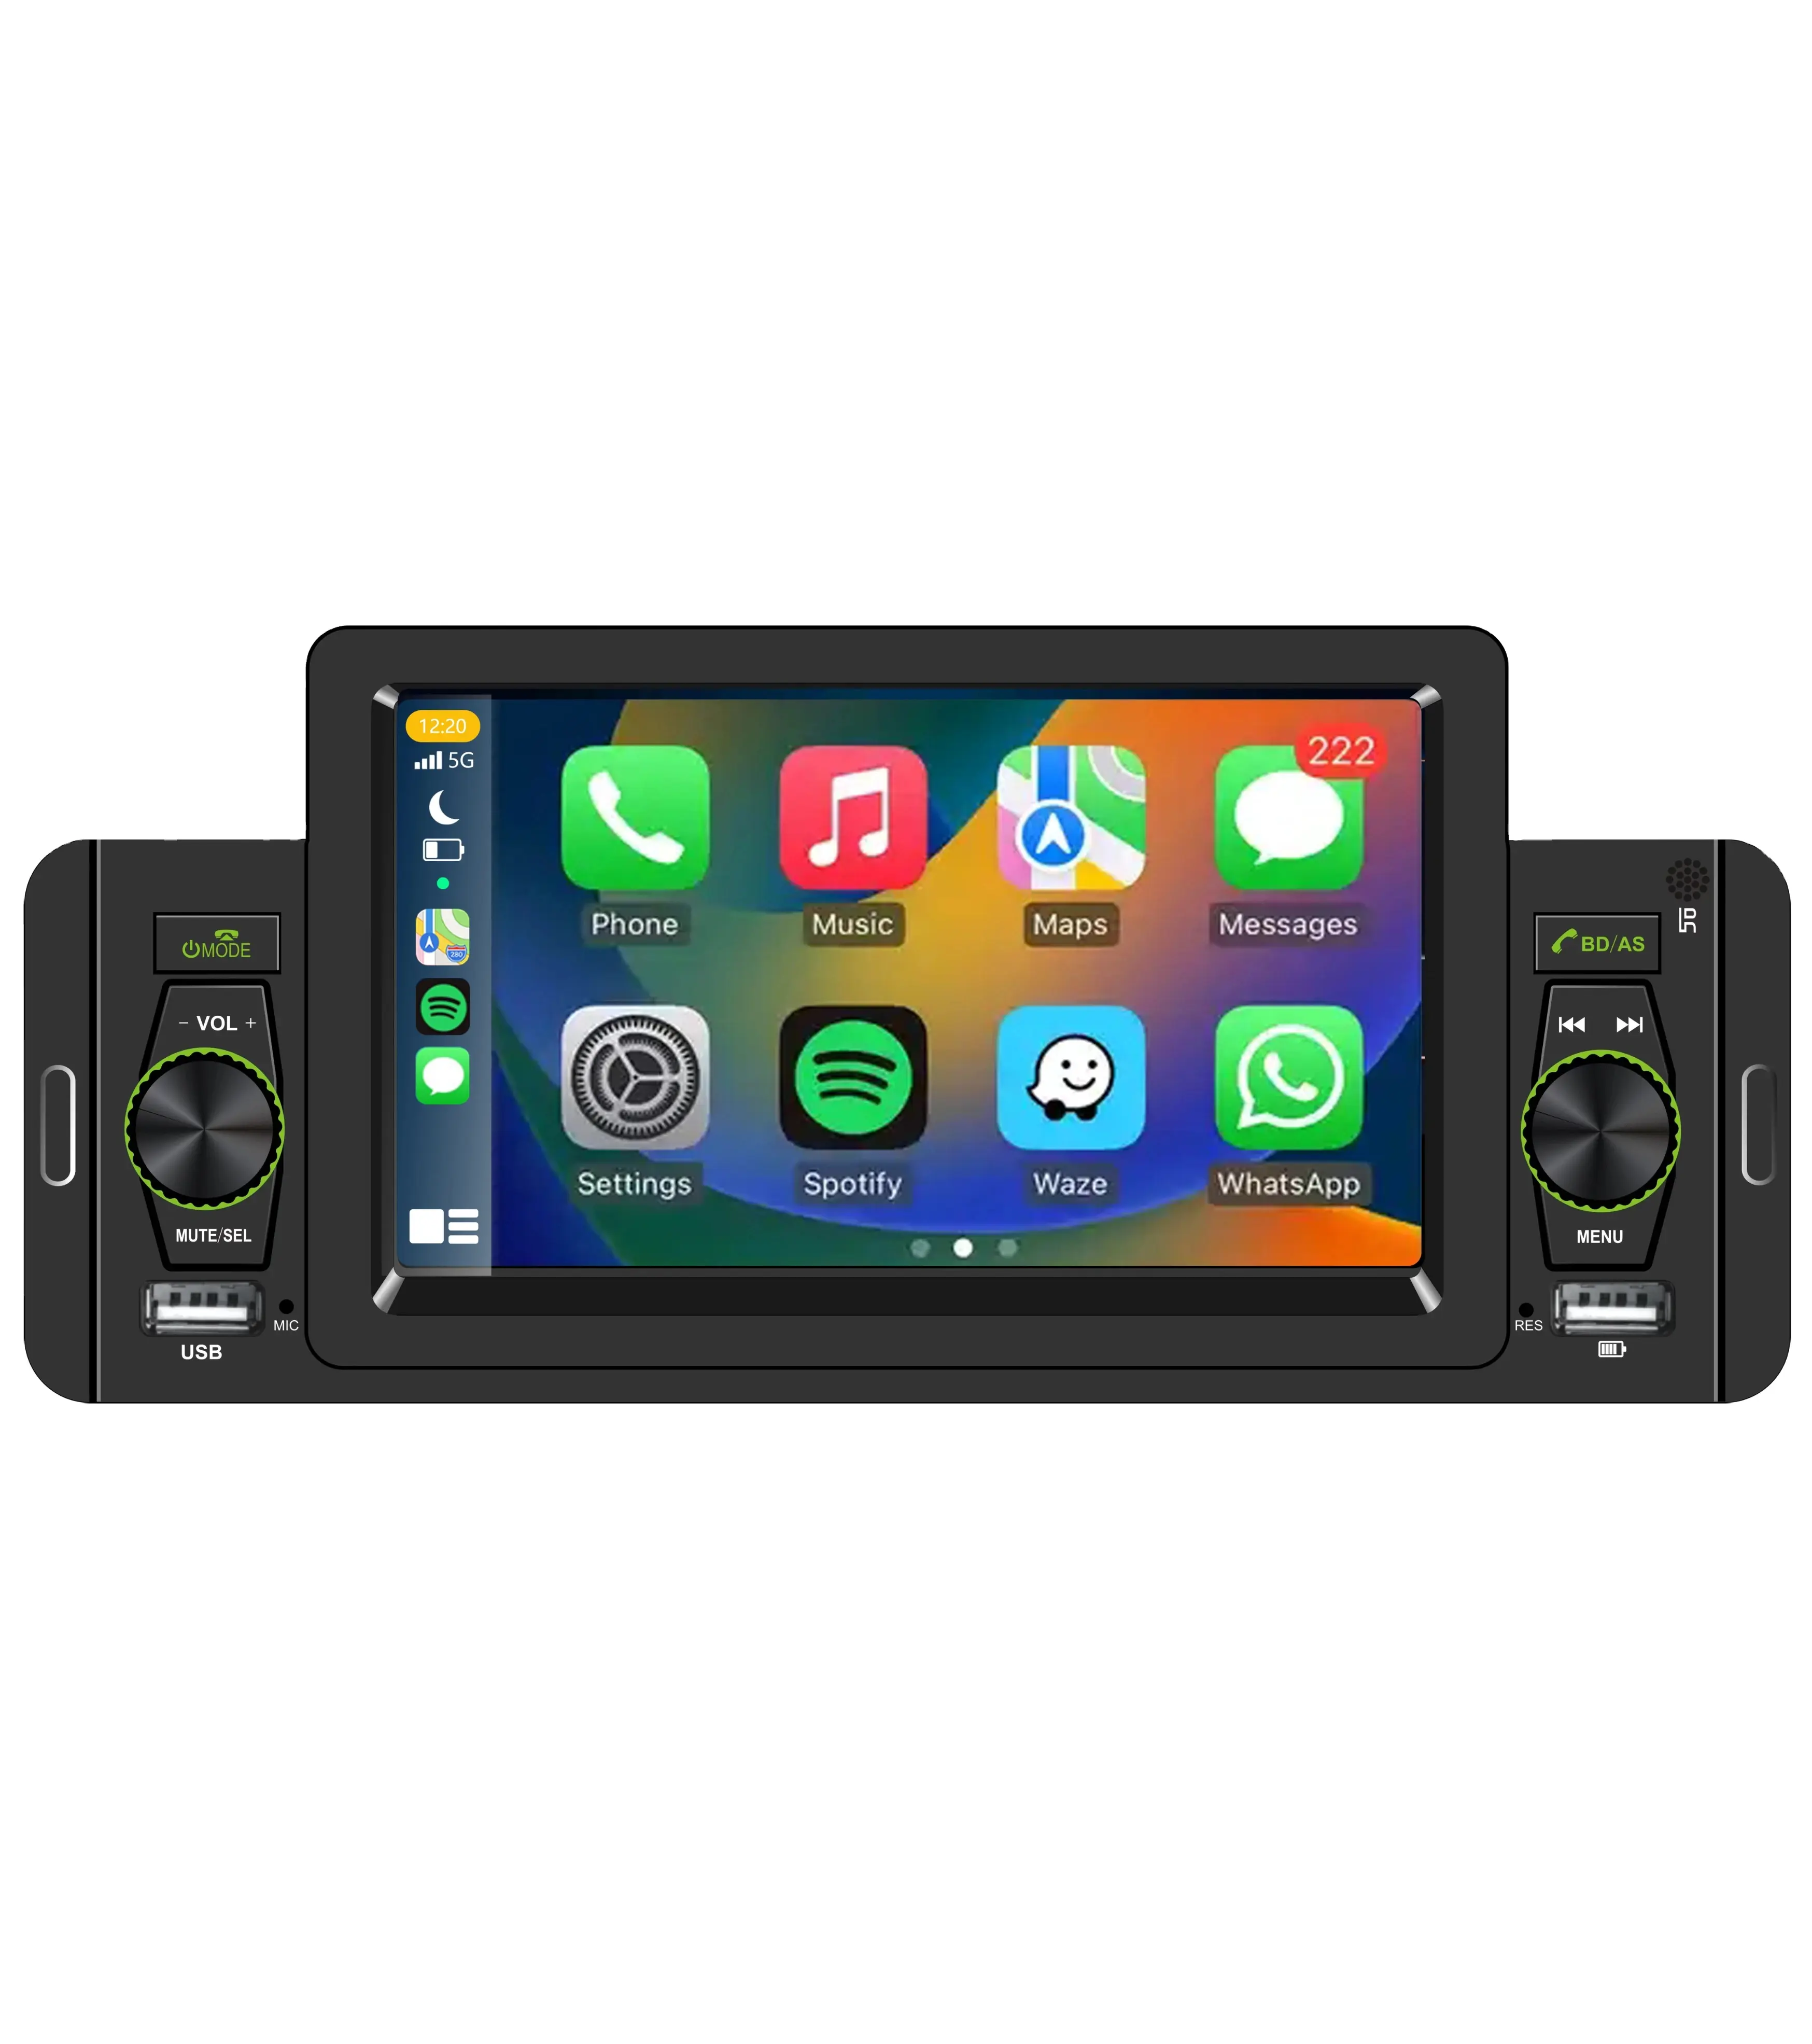 12.3inch Android 11 Car GPS navigation đa phương tiện đài phát thanh DVD Player cho BMW 5 Series F10 F11 2011-2016 CIC/NBT Carplay wifi 4 gam